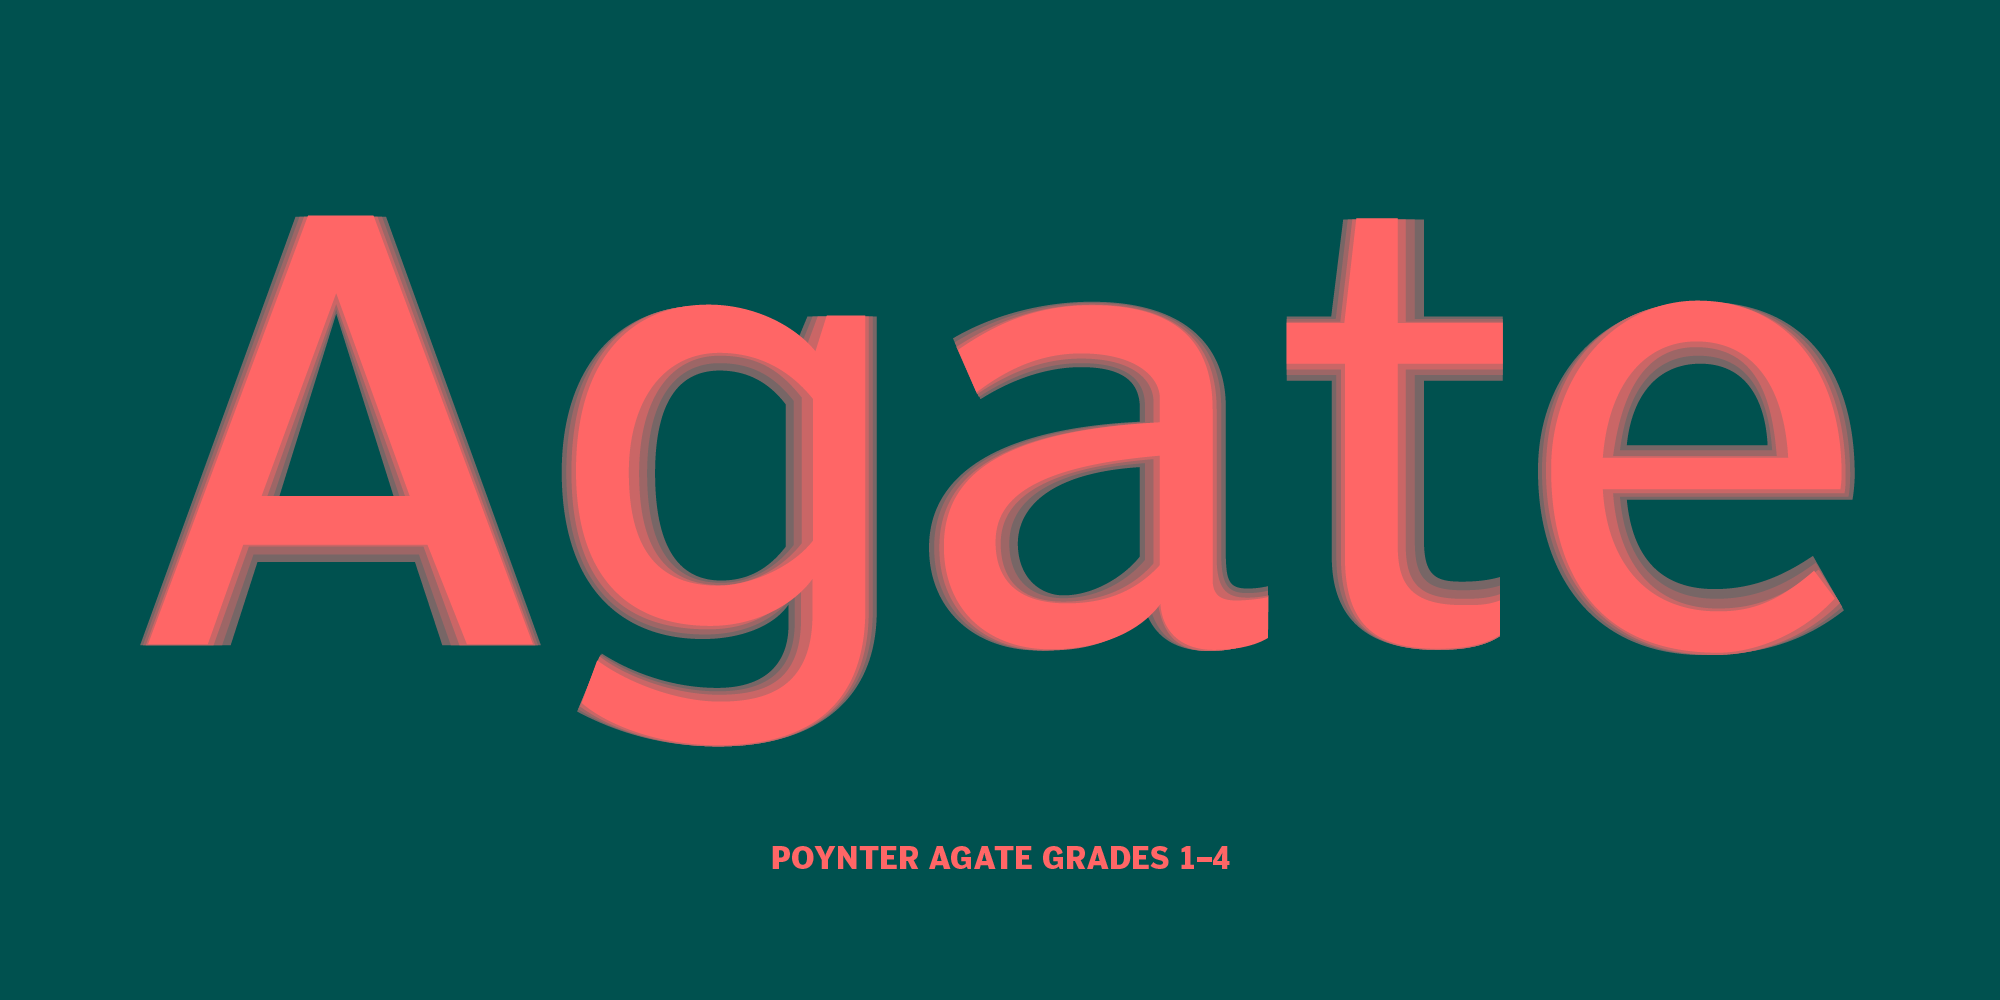 Poynter Agate grades